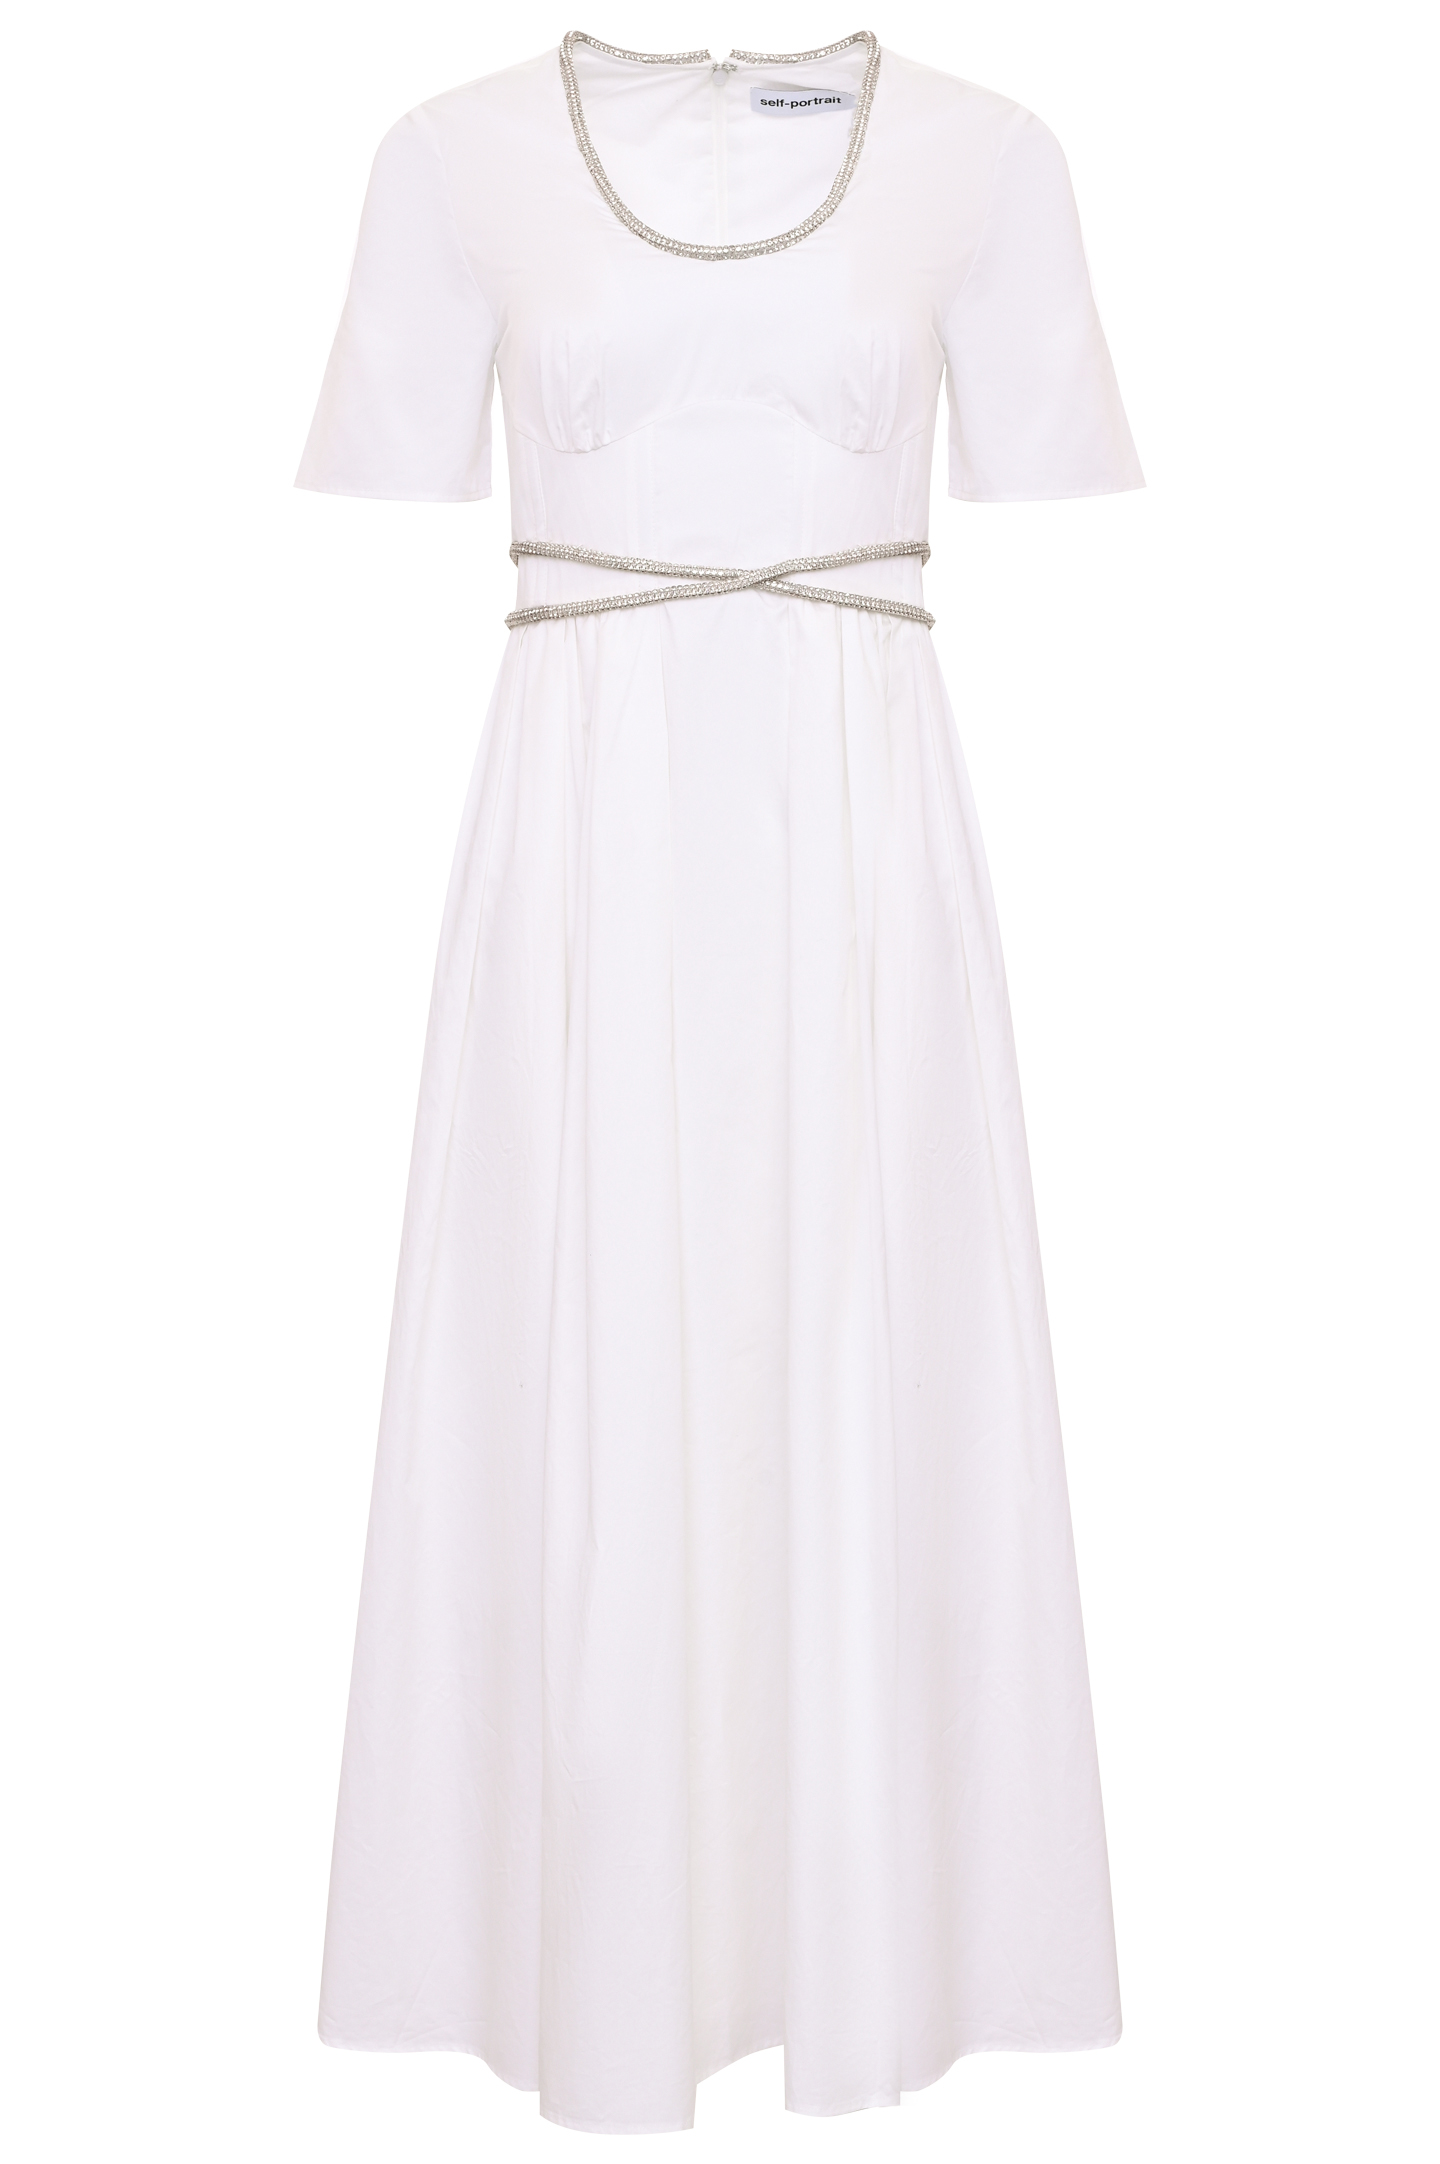 Платье SELF PORTRAIT RS22-040, цвет: Белый, Женский